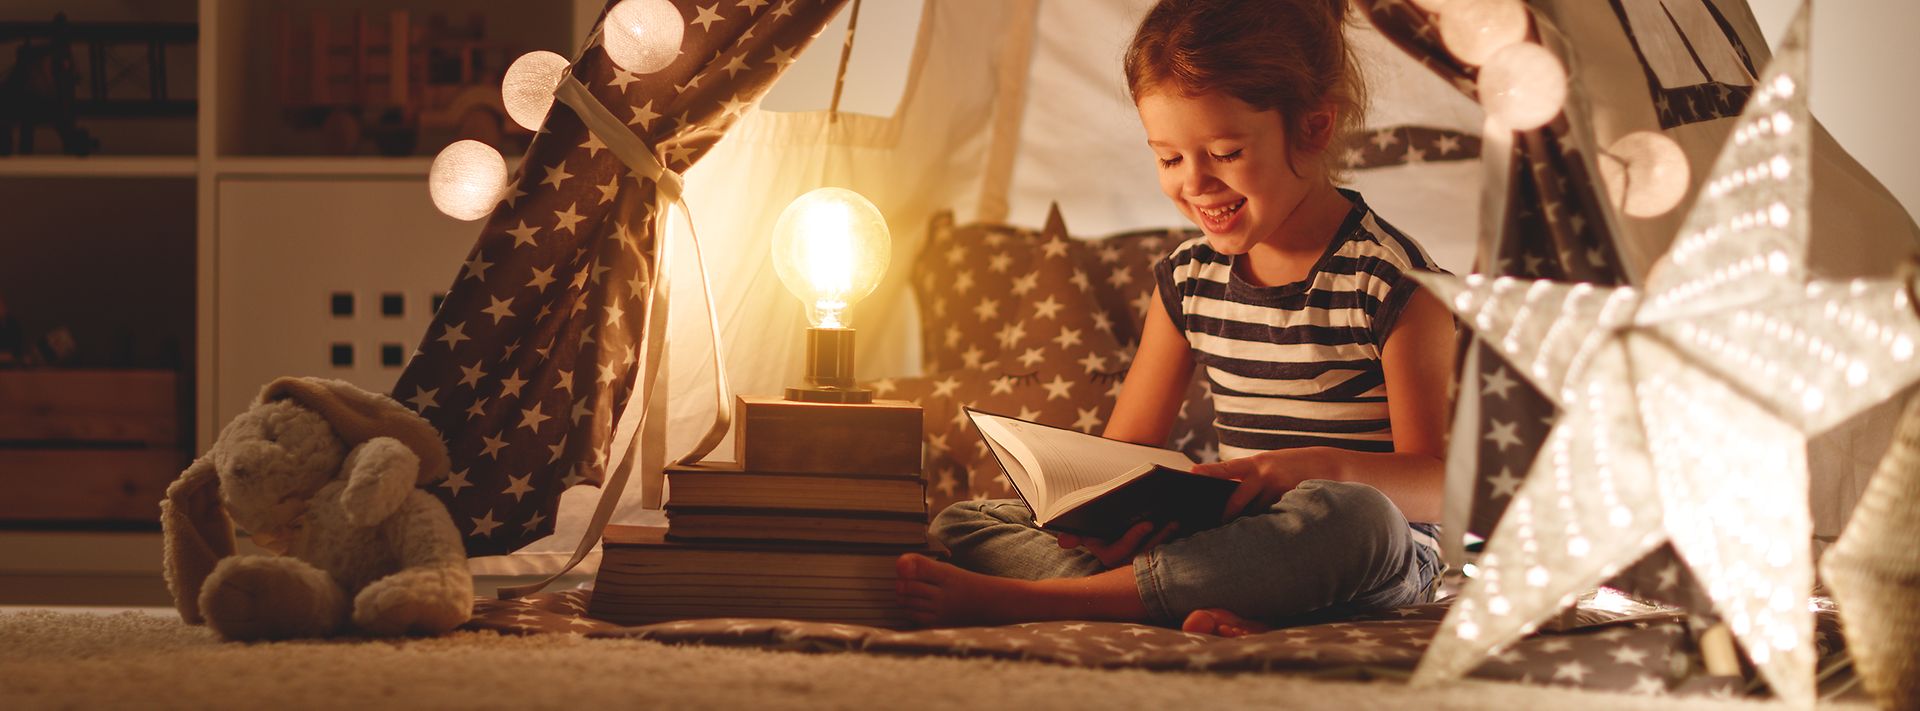 Energiespartipps: Kind liest im Lampenschein